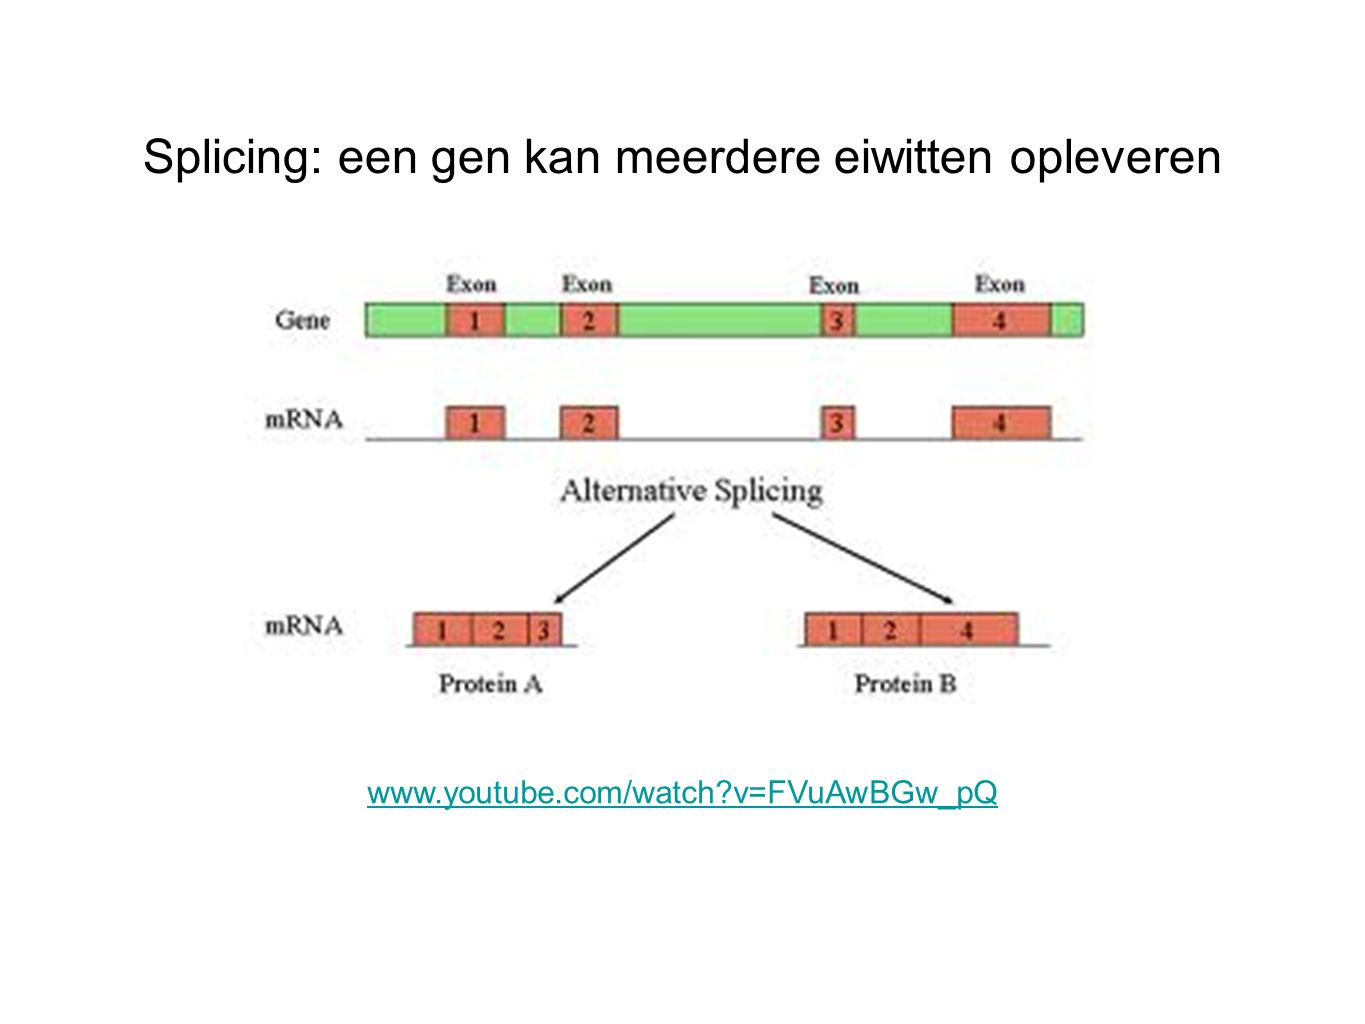 Splicing: een gen kan meerdere eiwitten opleveren